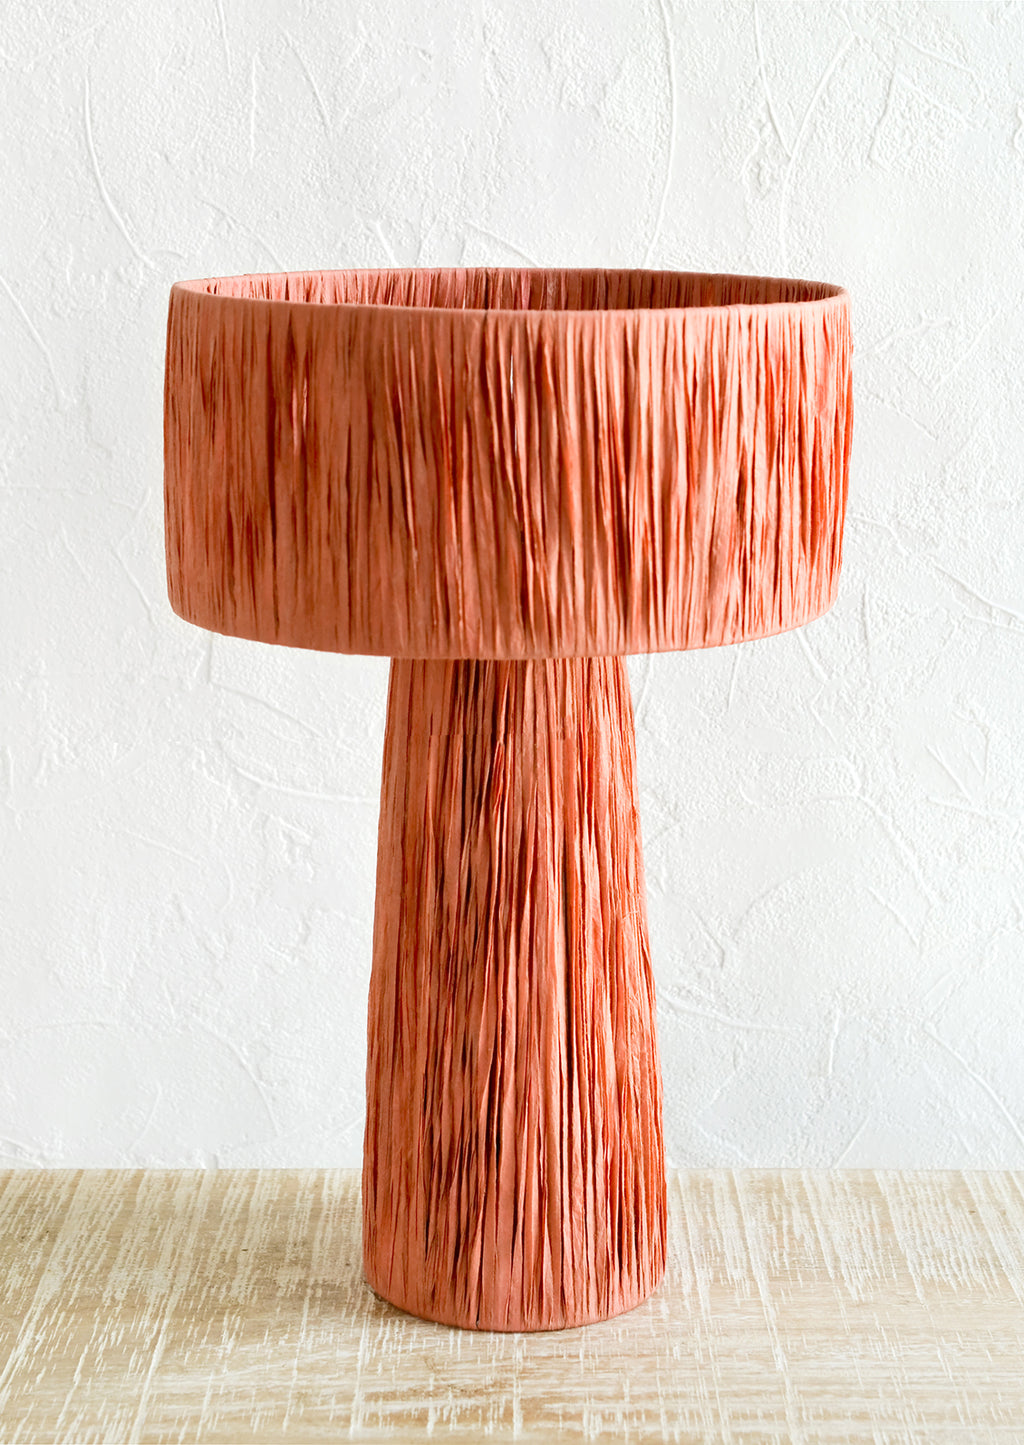 Terracotta Peach: A table lamp wrapped in peach raffia.